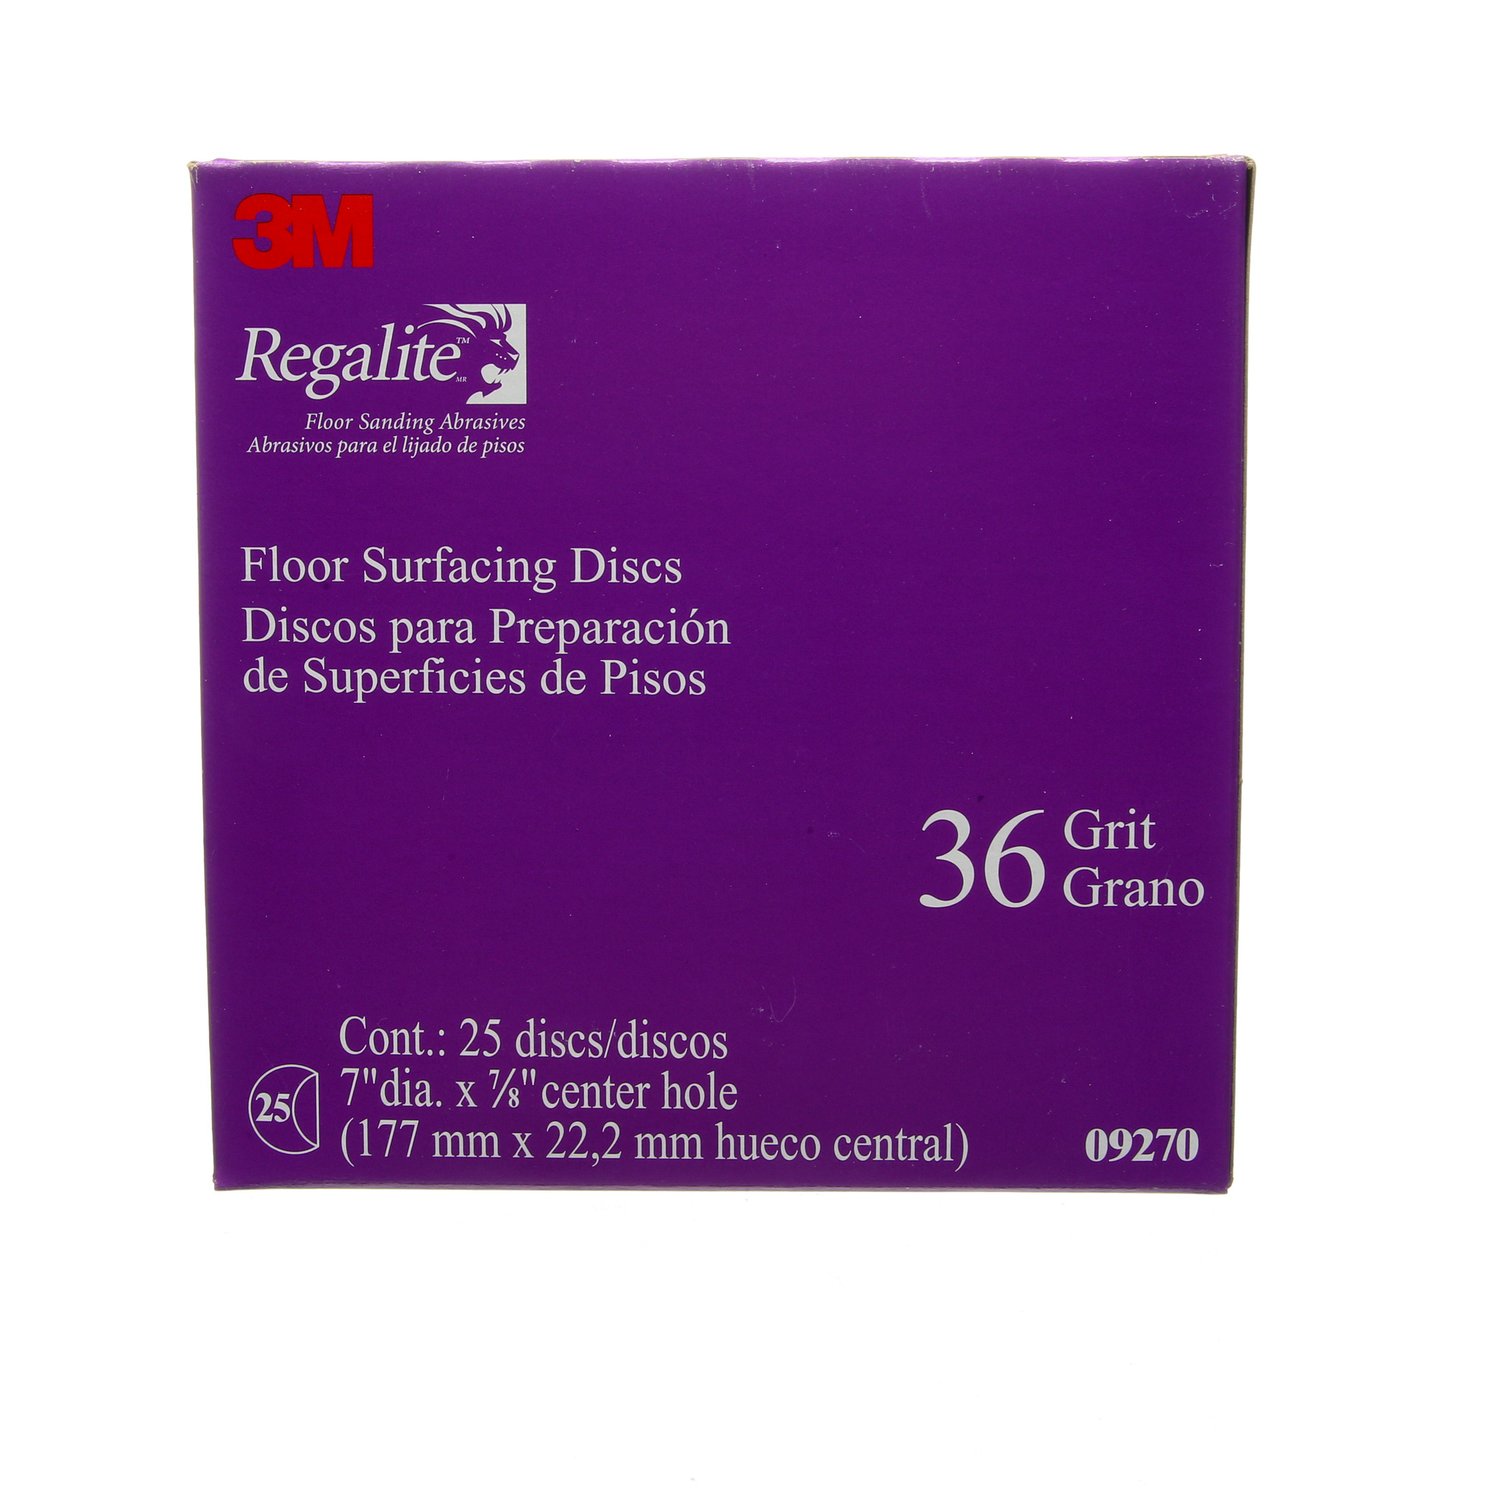 7010384122 - 3M Regalite Floor Surfacing Discs 09270, 7 in x 7/8 in, 752I, 36 Grit,
200/case